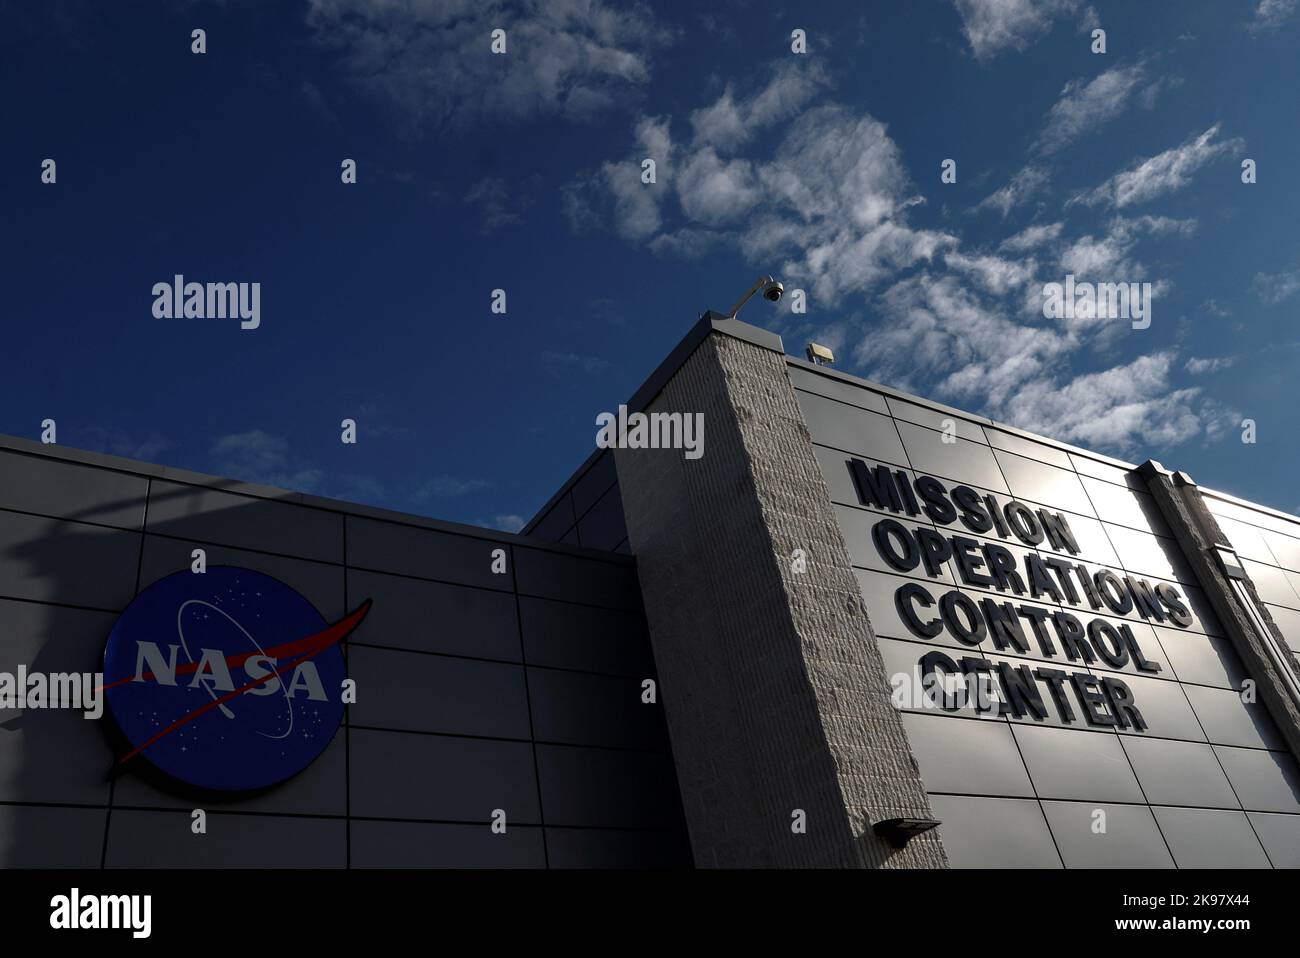 Vista del Centro de Control de Operaciones de Misión de la NASA en la Instalación de Vuelo Wallops en Wallops Island, Virginia, EE.UU., 26 de octubre de 2022. REUTERS/Evelyn Hockstein Foto de stock